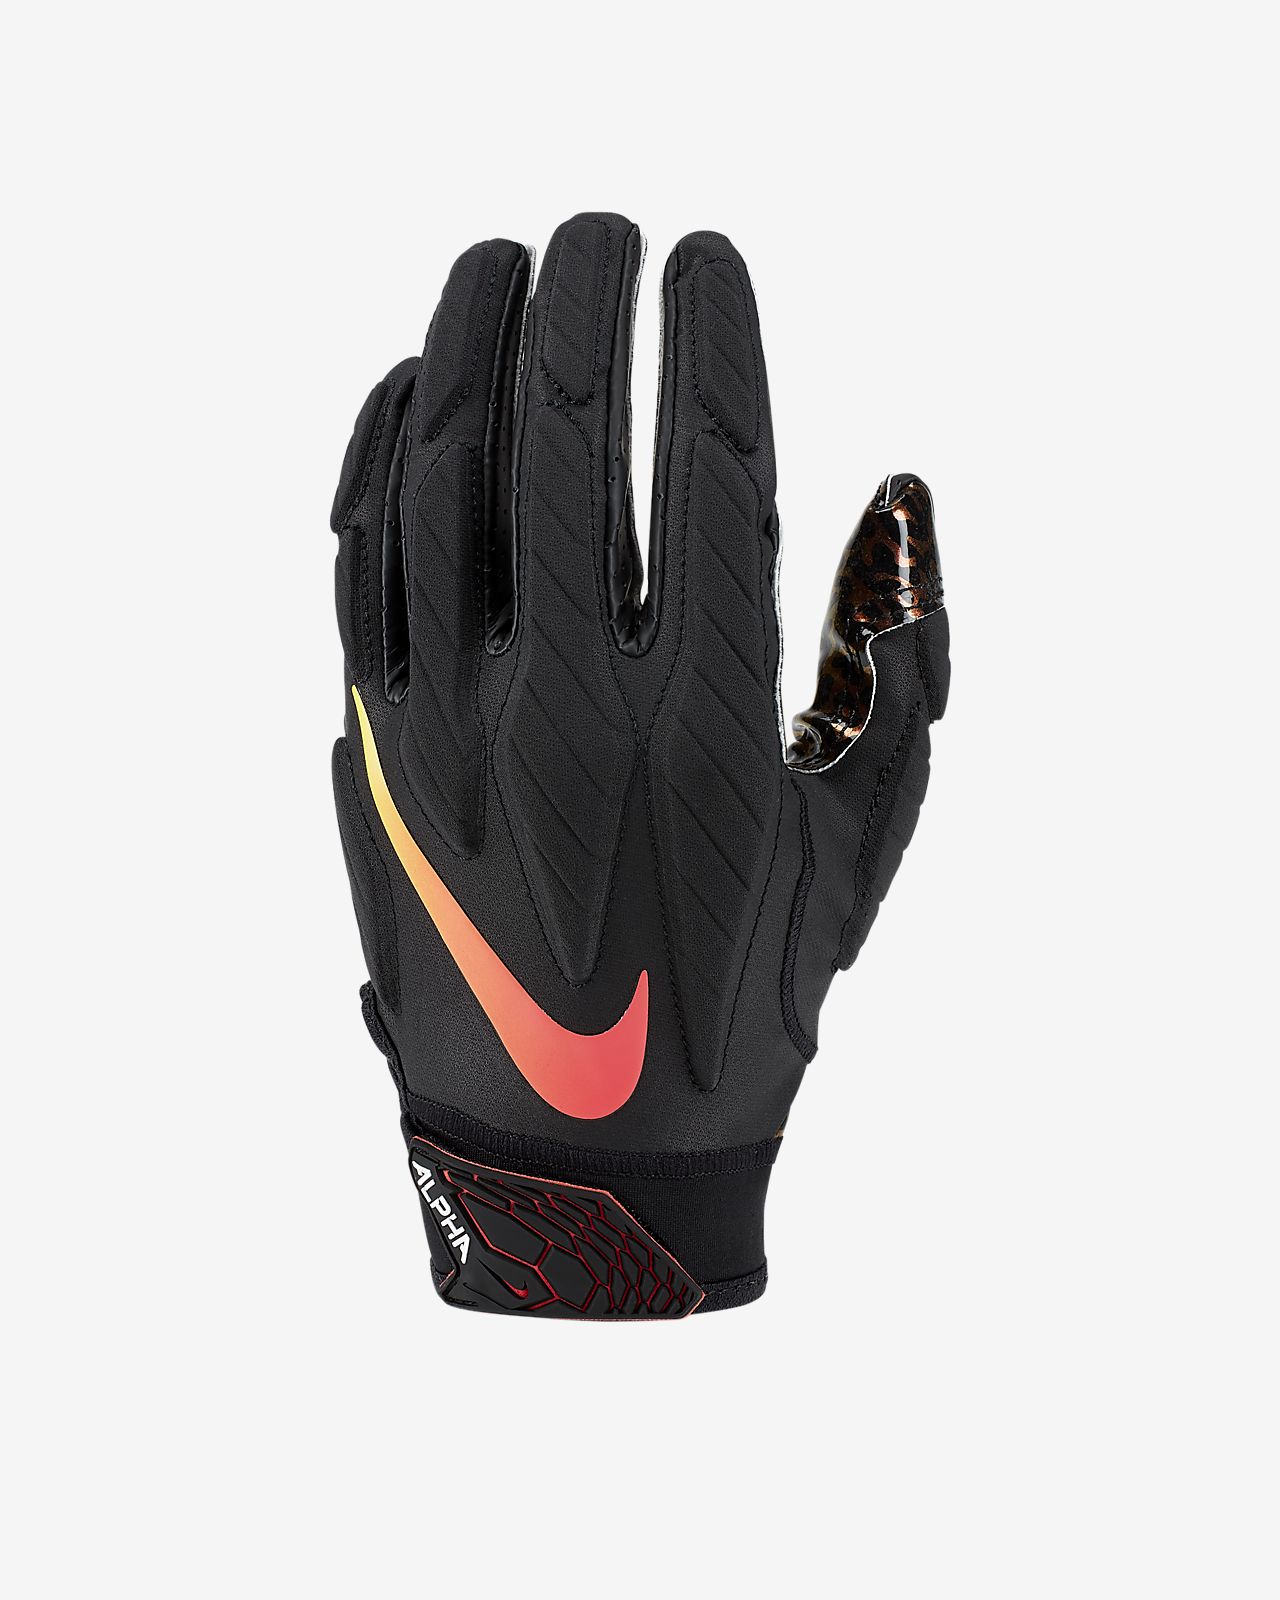 superbad 5 gloves